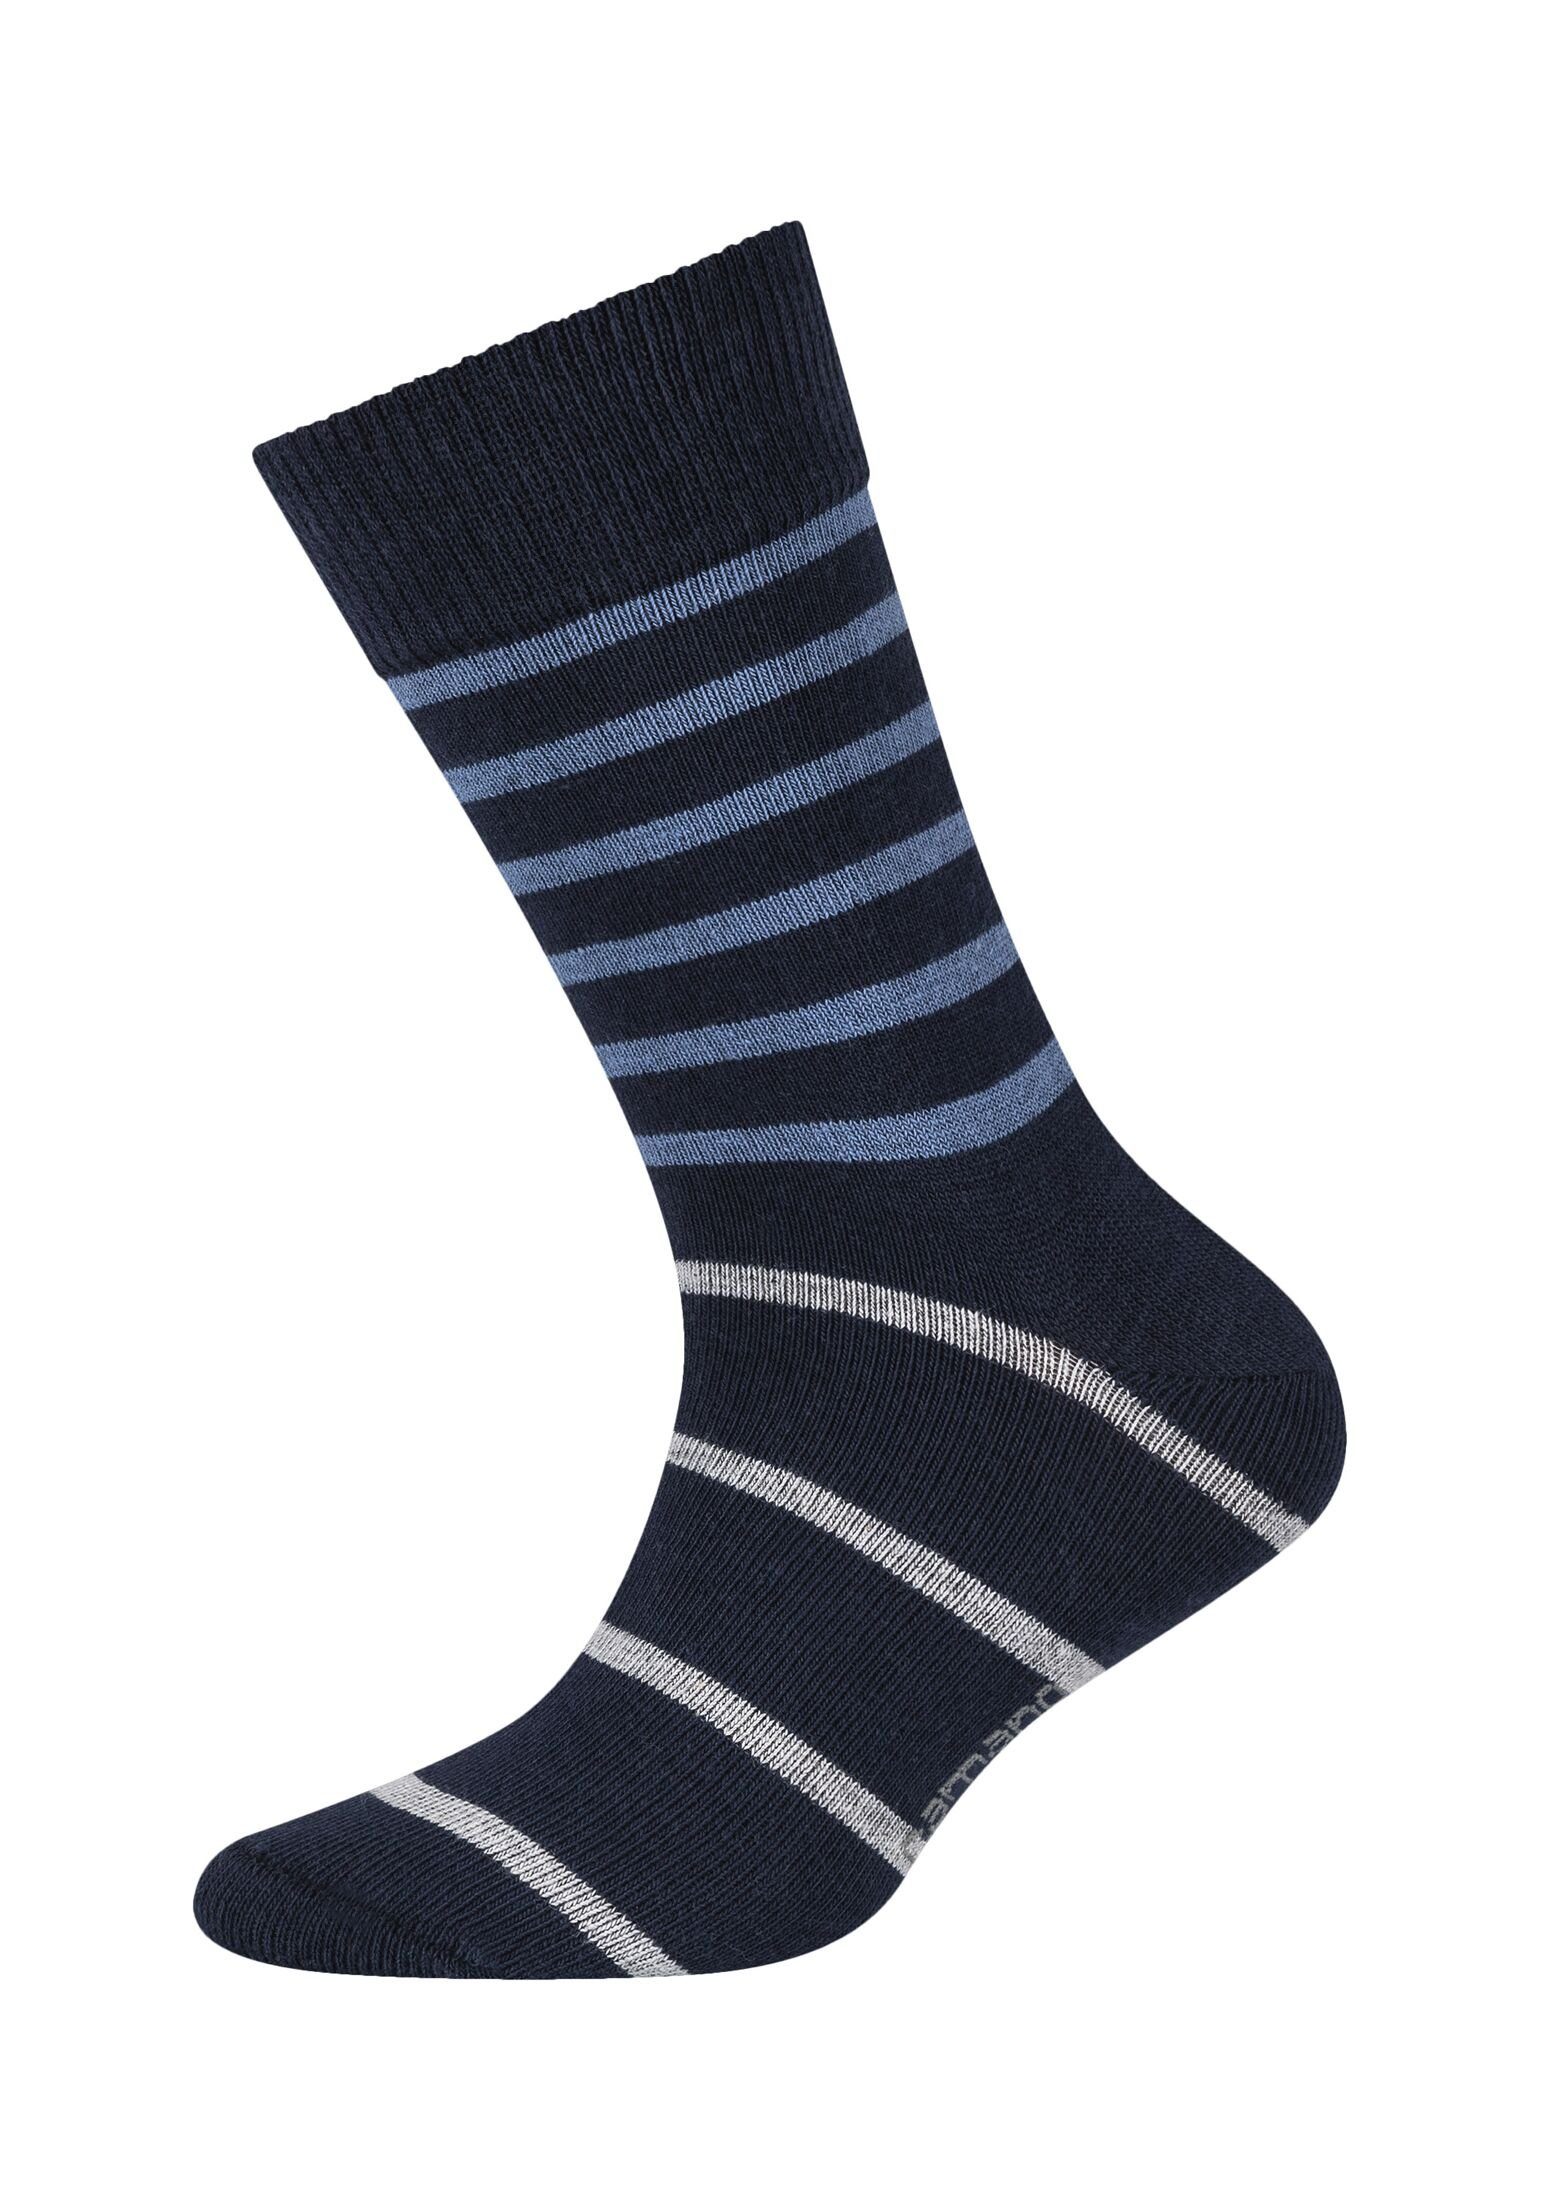 Camano Socken blue Pack 8er Socken